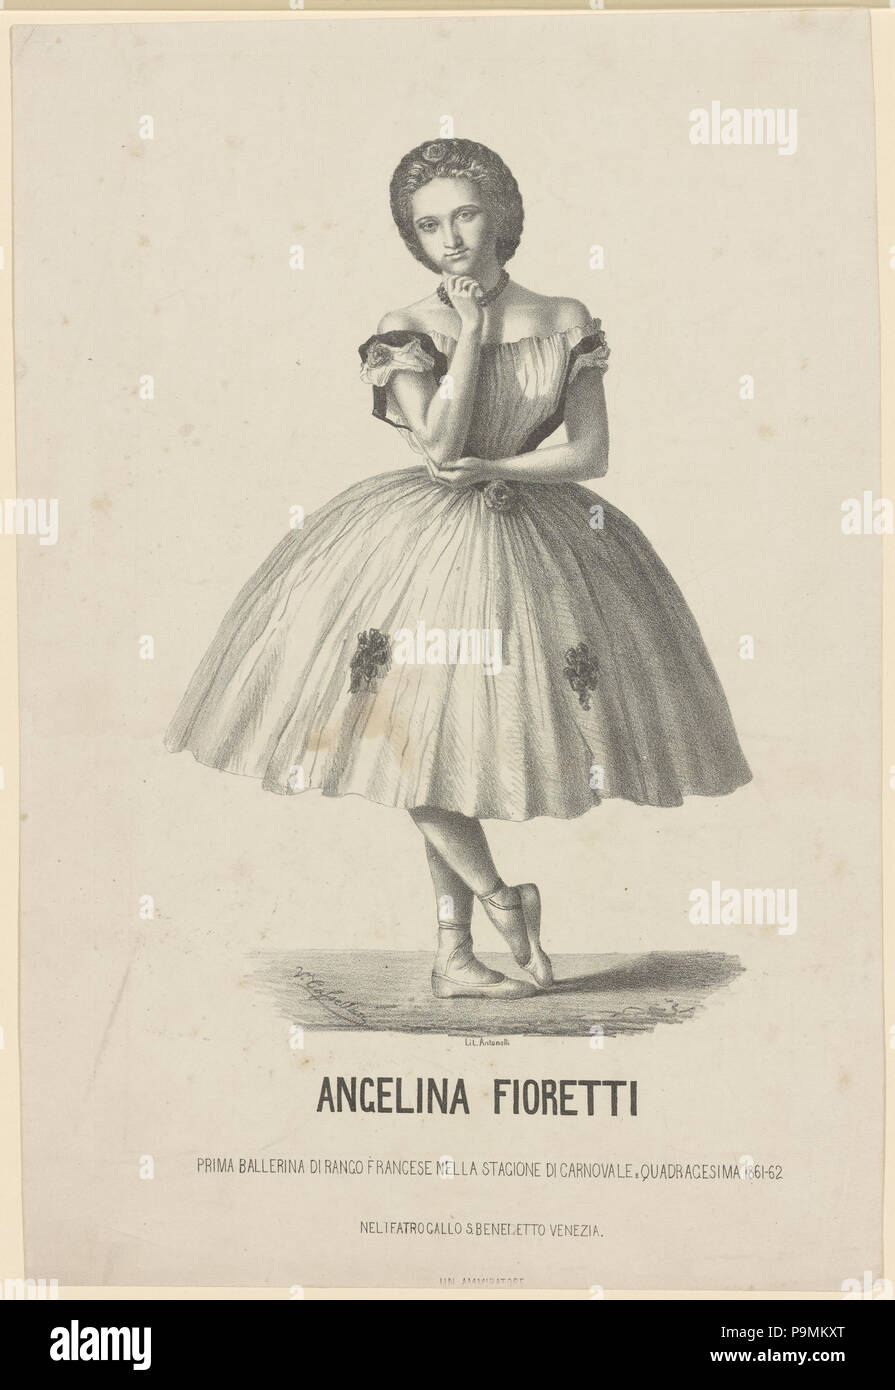 131 Angelina Fioretti, prima ballerina di rango francese nella stagione di e france farago quadragesima 1861-1862 nel Teatro Gallo S. Benedetto, Venezia (NYPL)12148321-5234930 b Banque D'Images